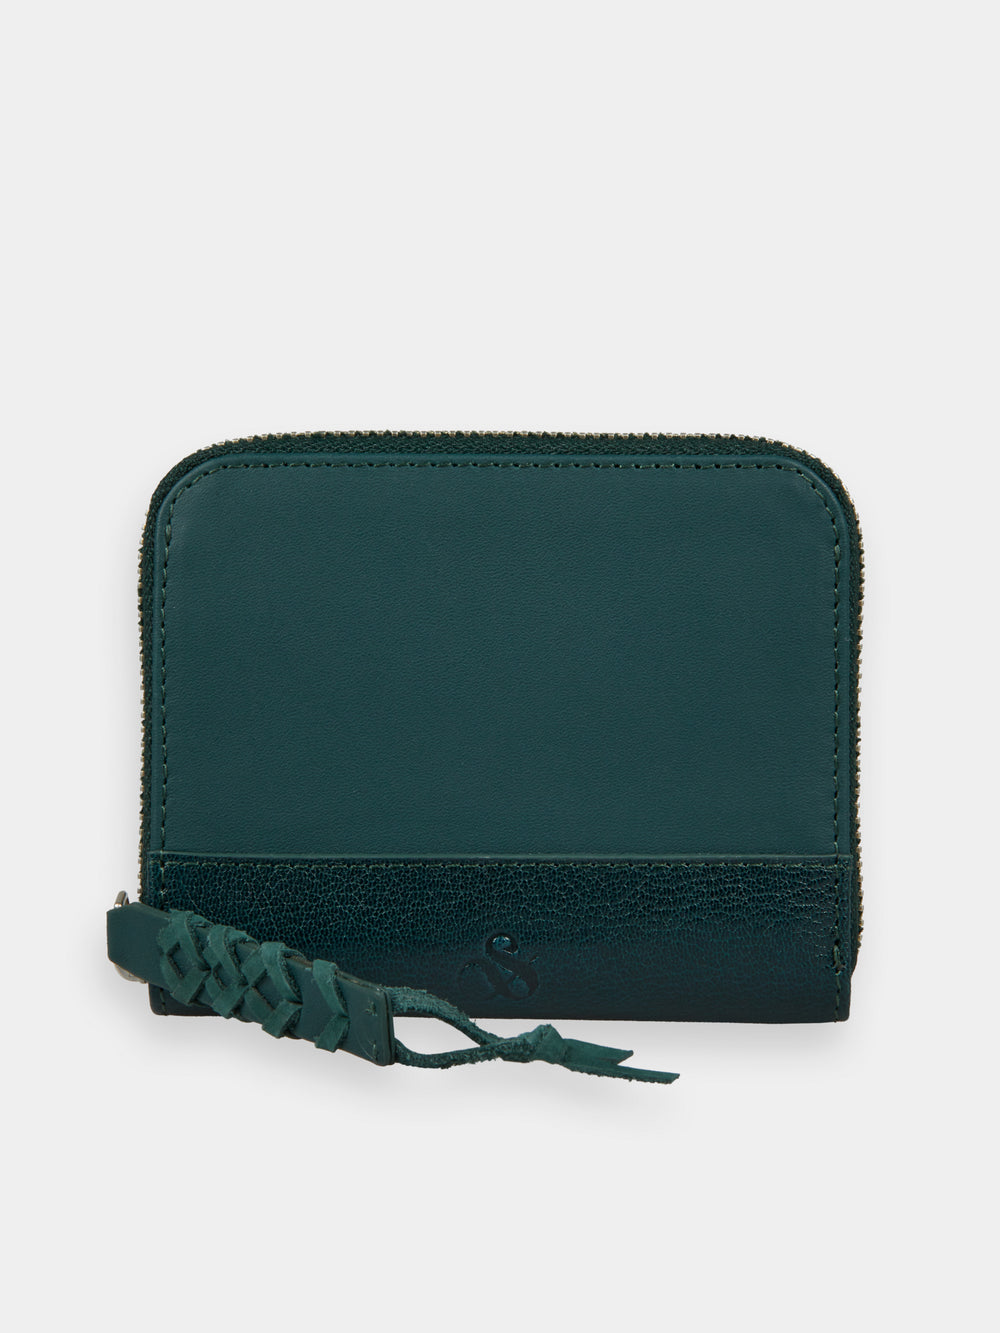 Mini leather wallet - Scotch & Soda NZ